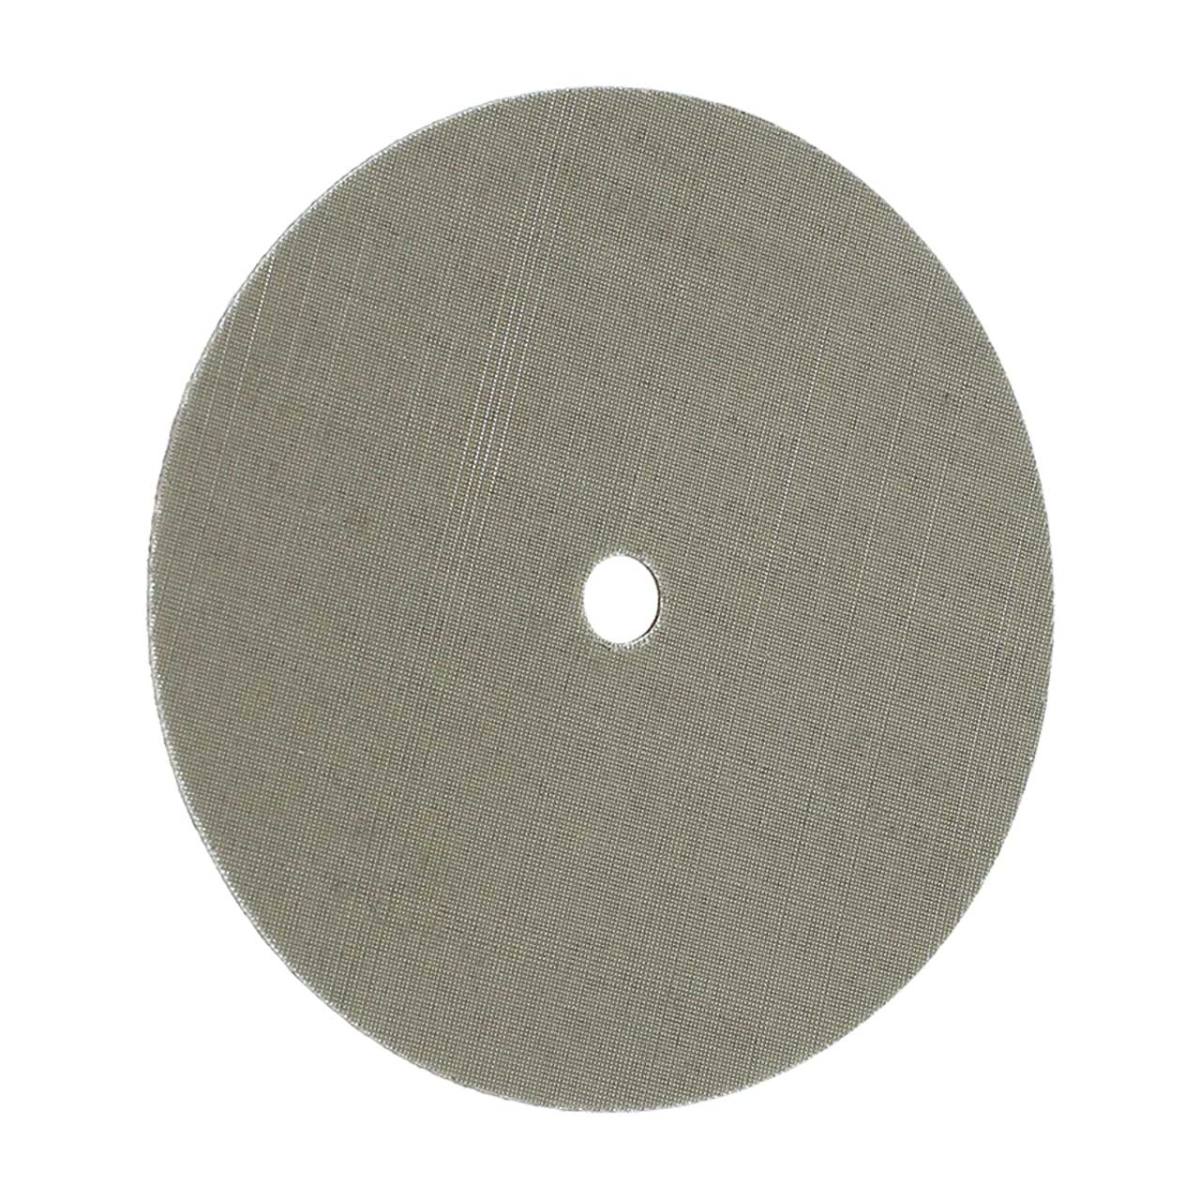 FIX KLETT Disco Trizact, 115 mm x 10 mm, grano 2.000 / A 06, cierre autoadherente